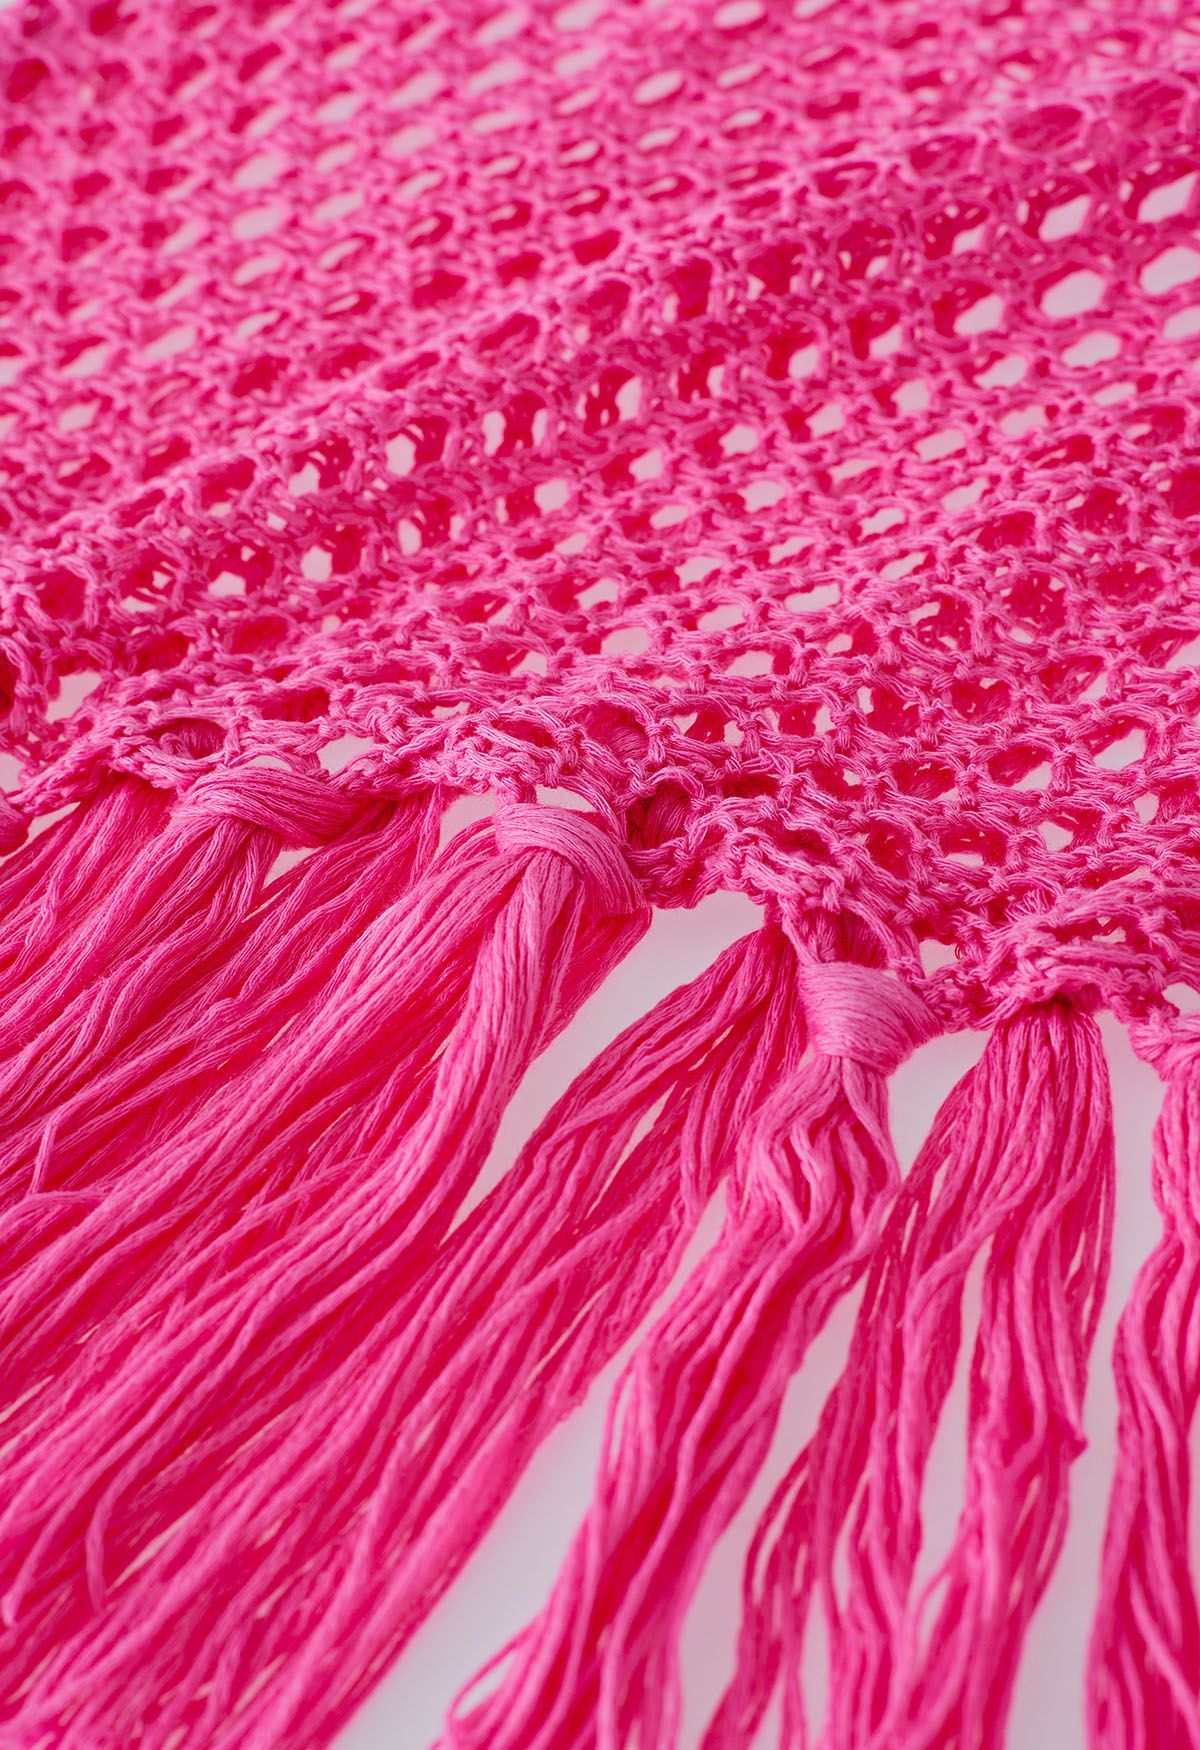 Couverture en tricot sans manches à ourlet à pampilles en rose vif